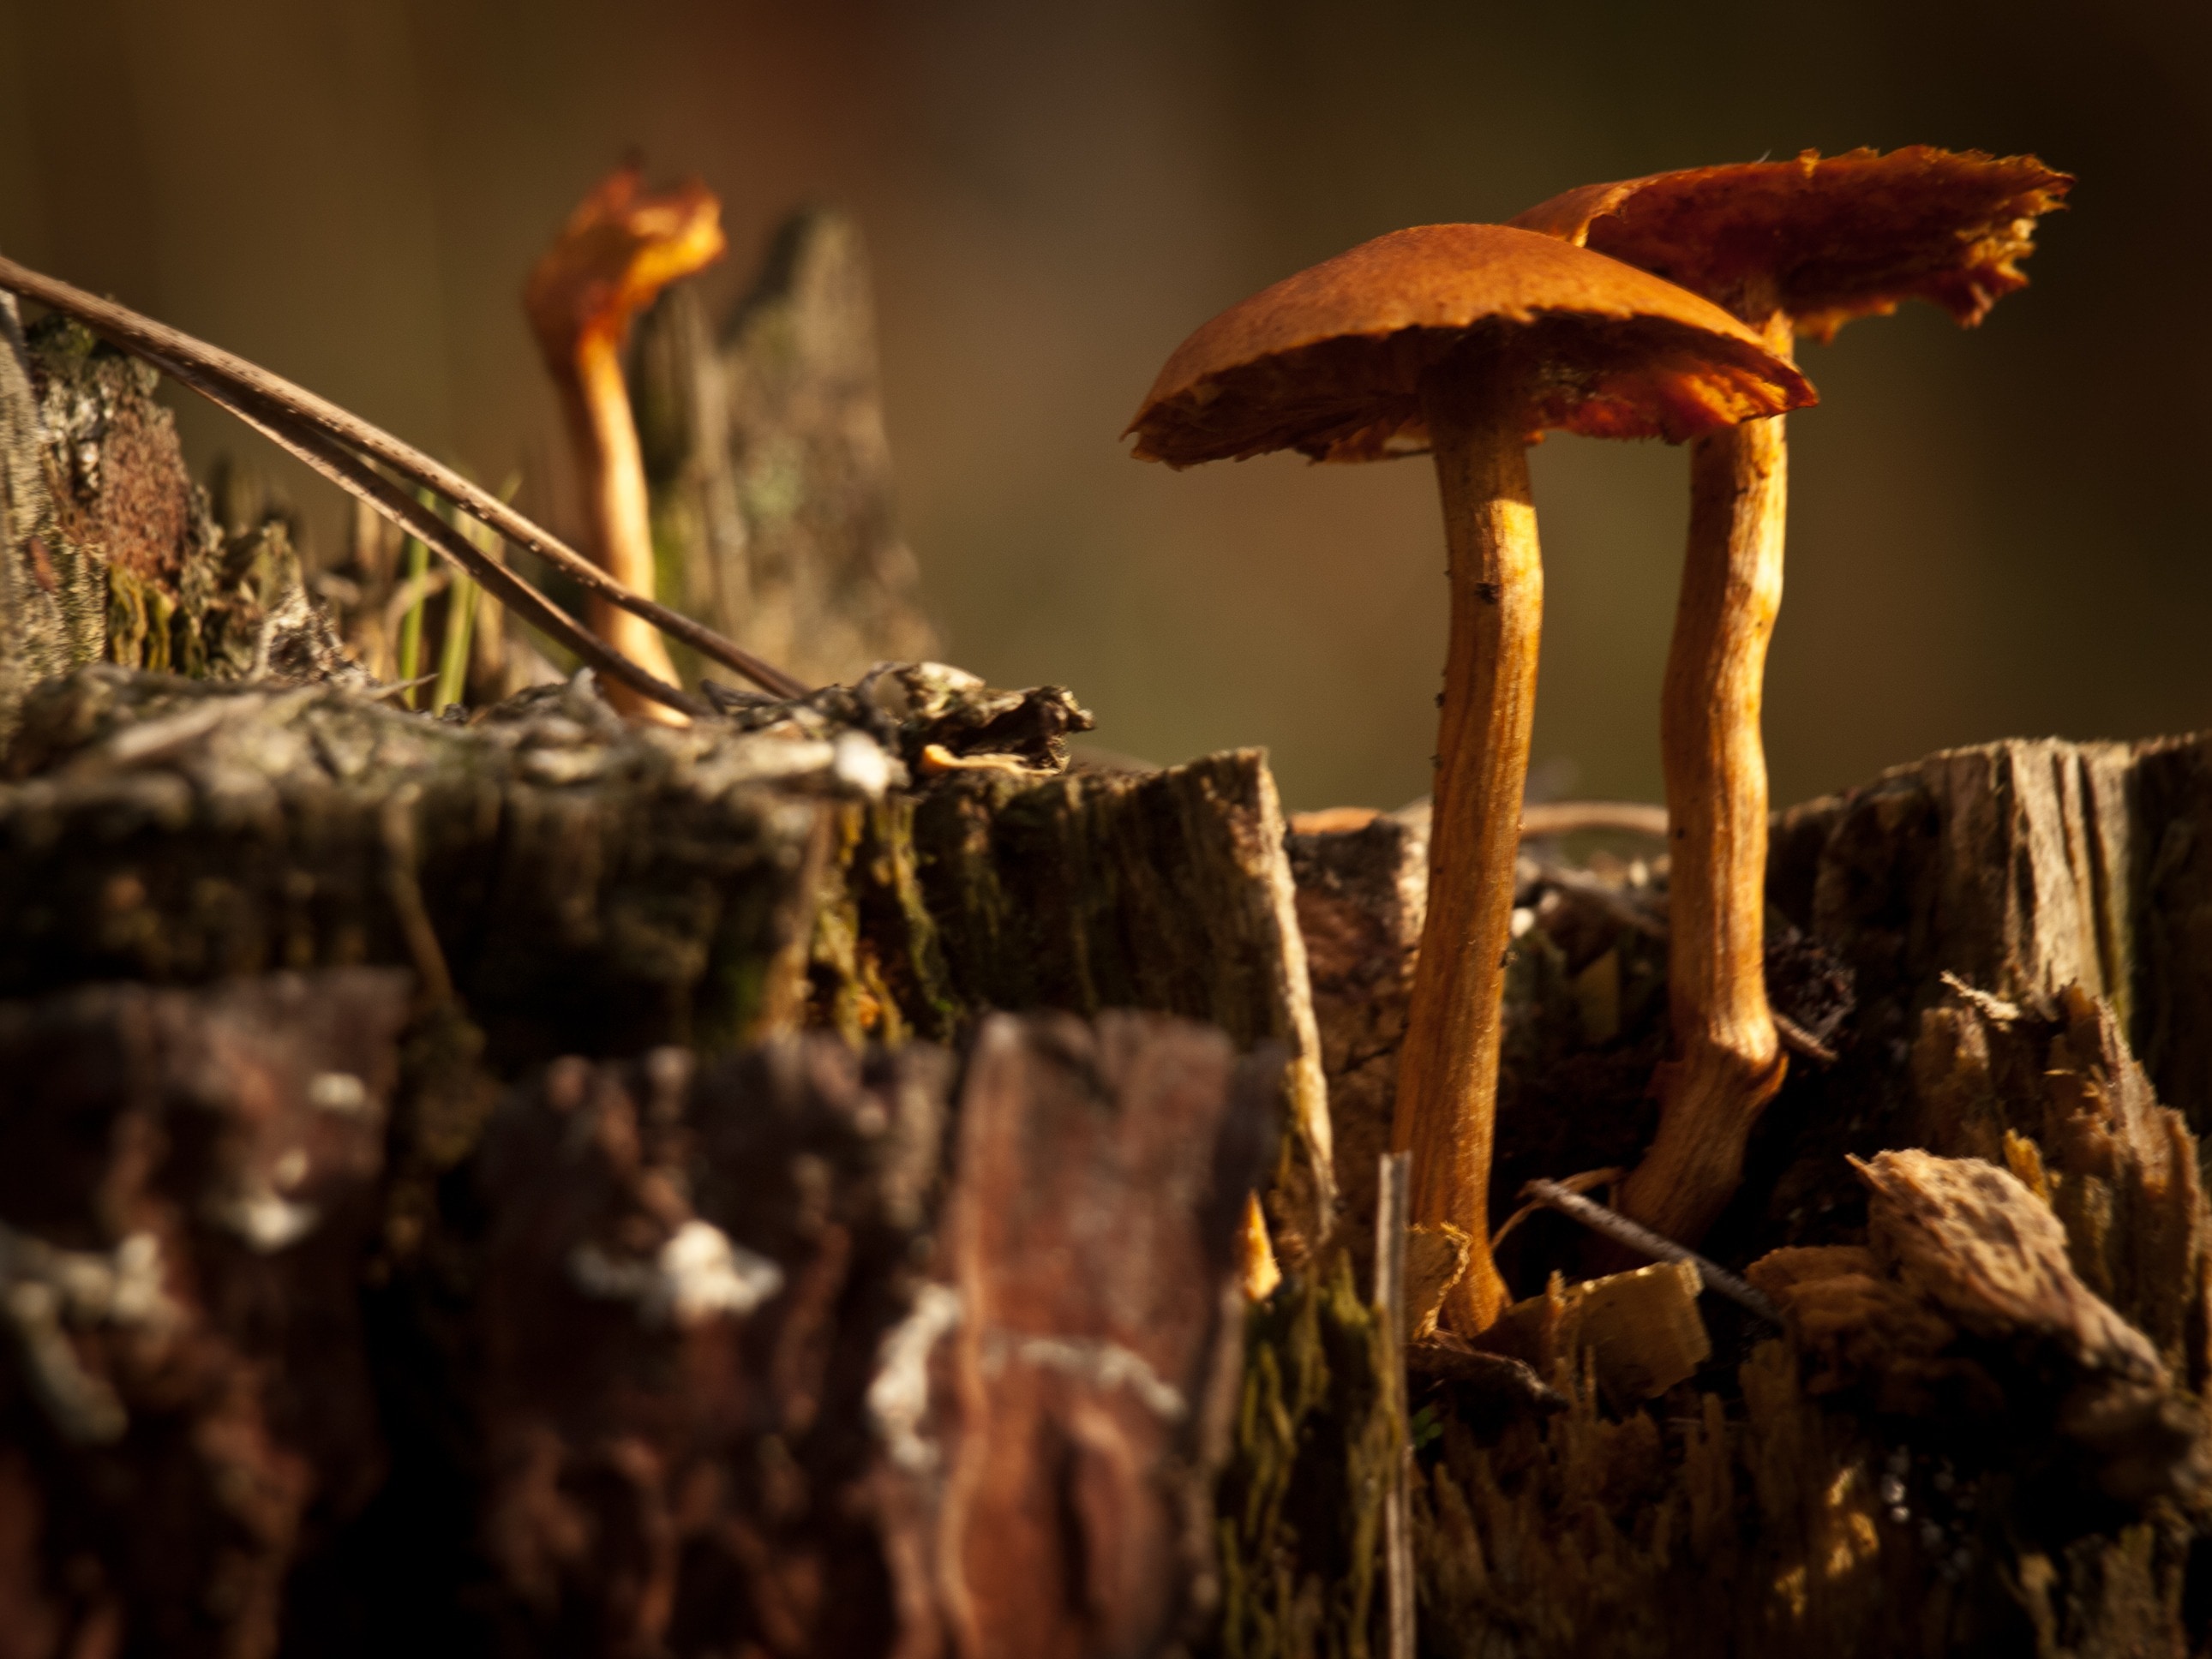 brown mushroom on brown wood